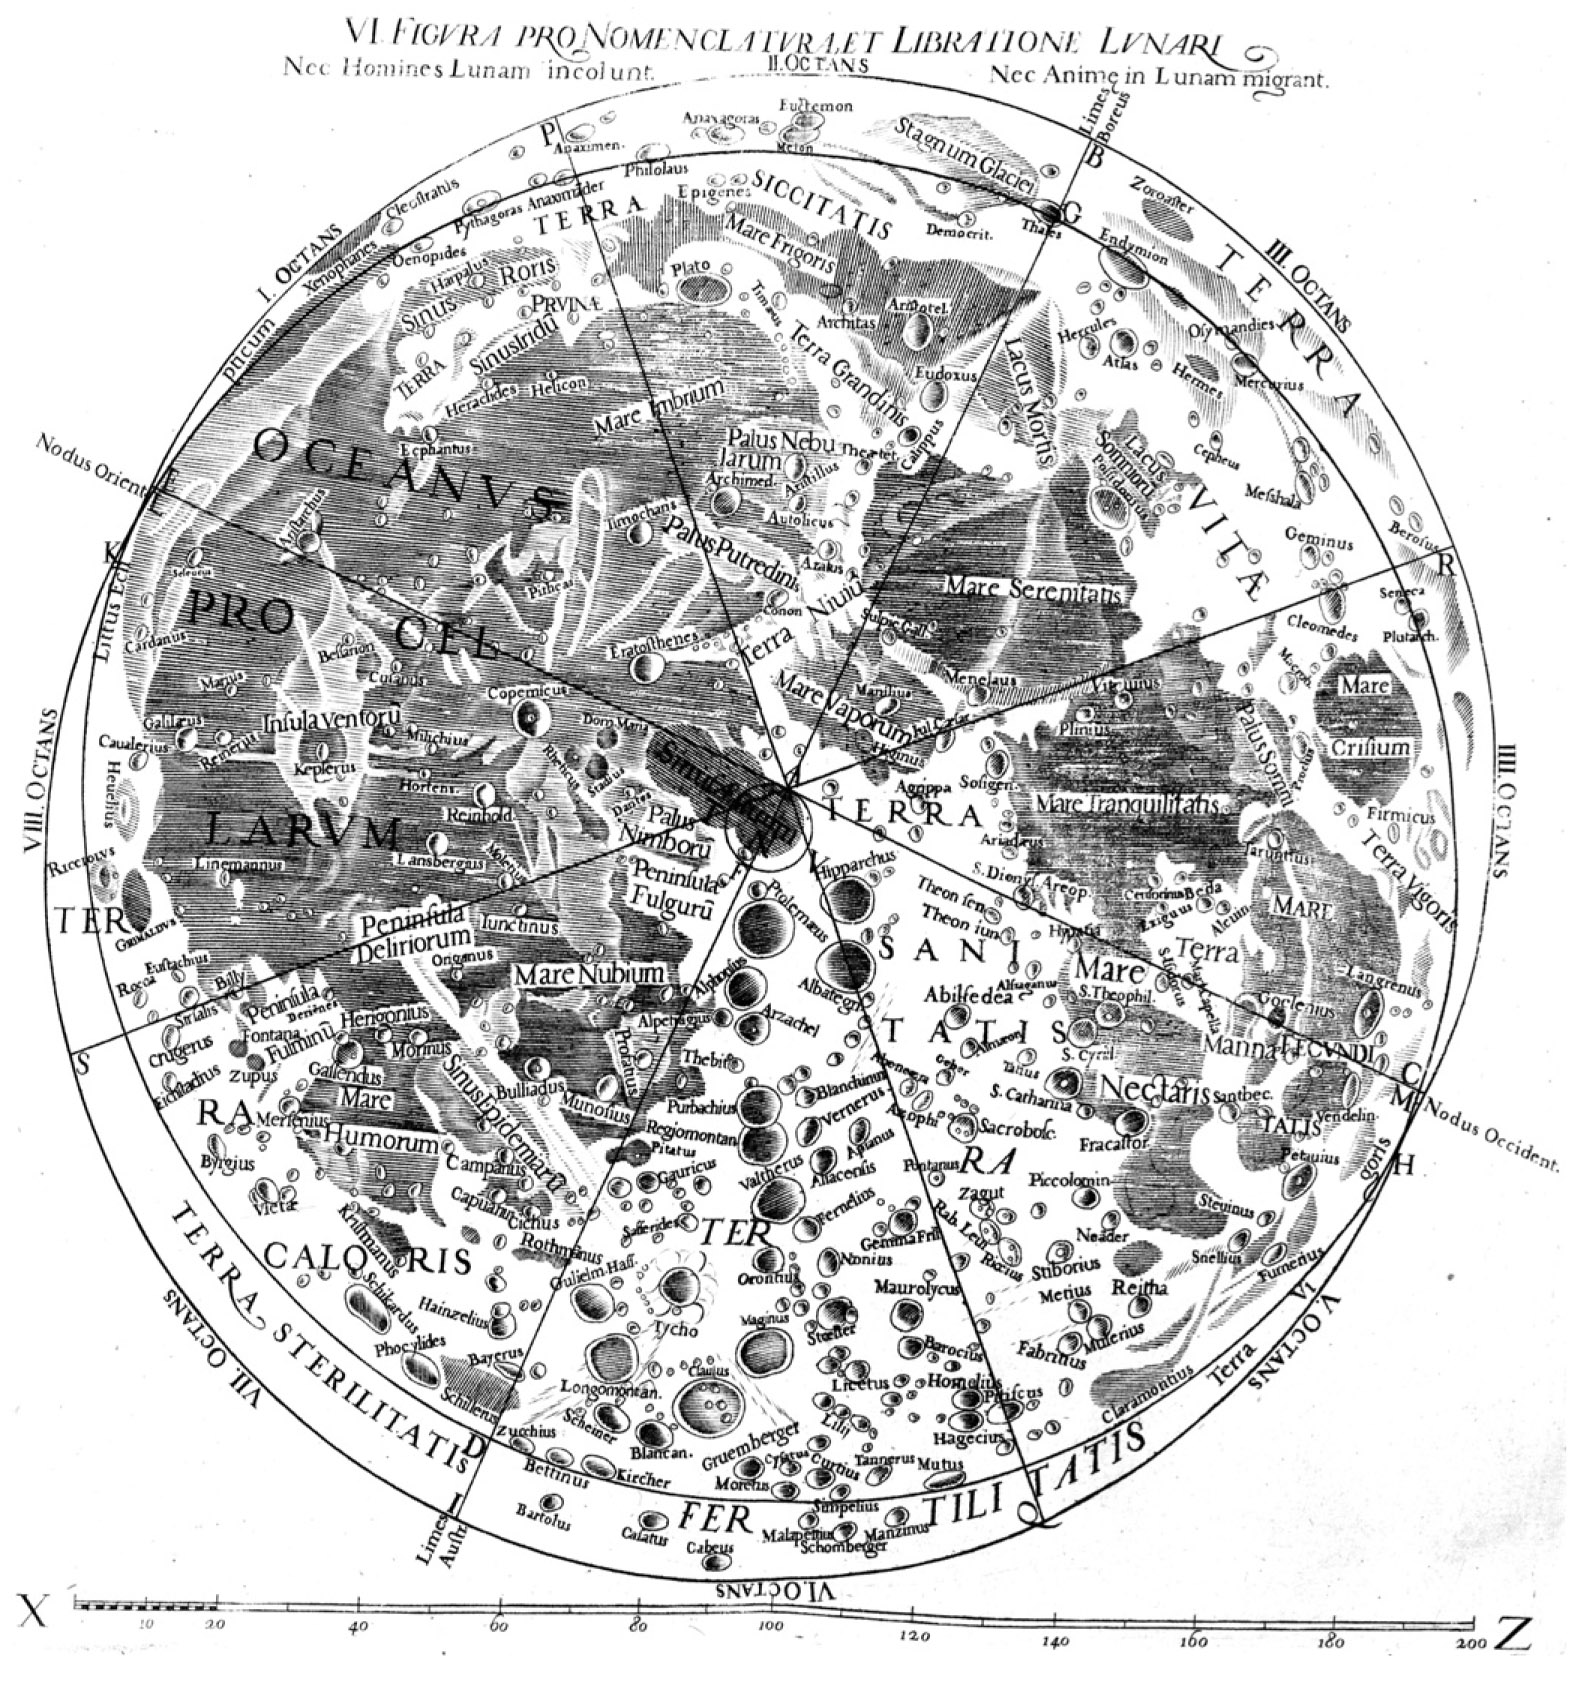 A Hold térképe Riccioli és Grimaldi szerint, az 1651-es Almagestum Novumból